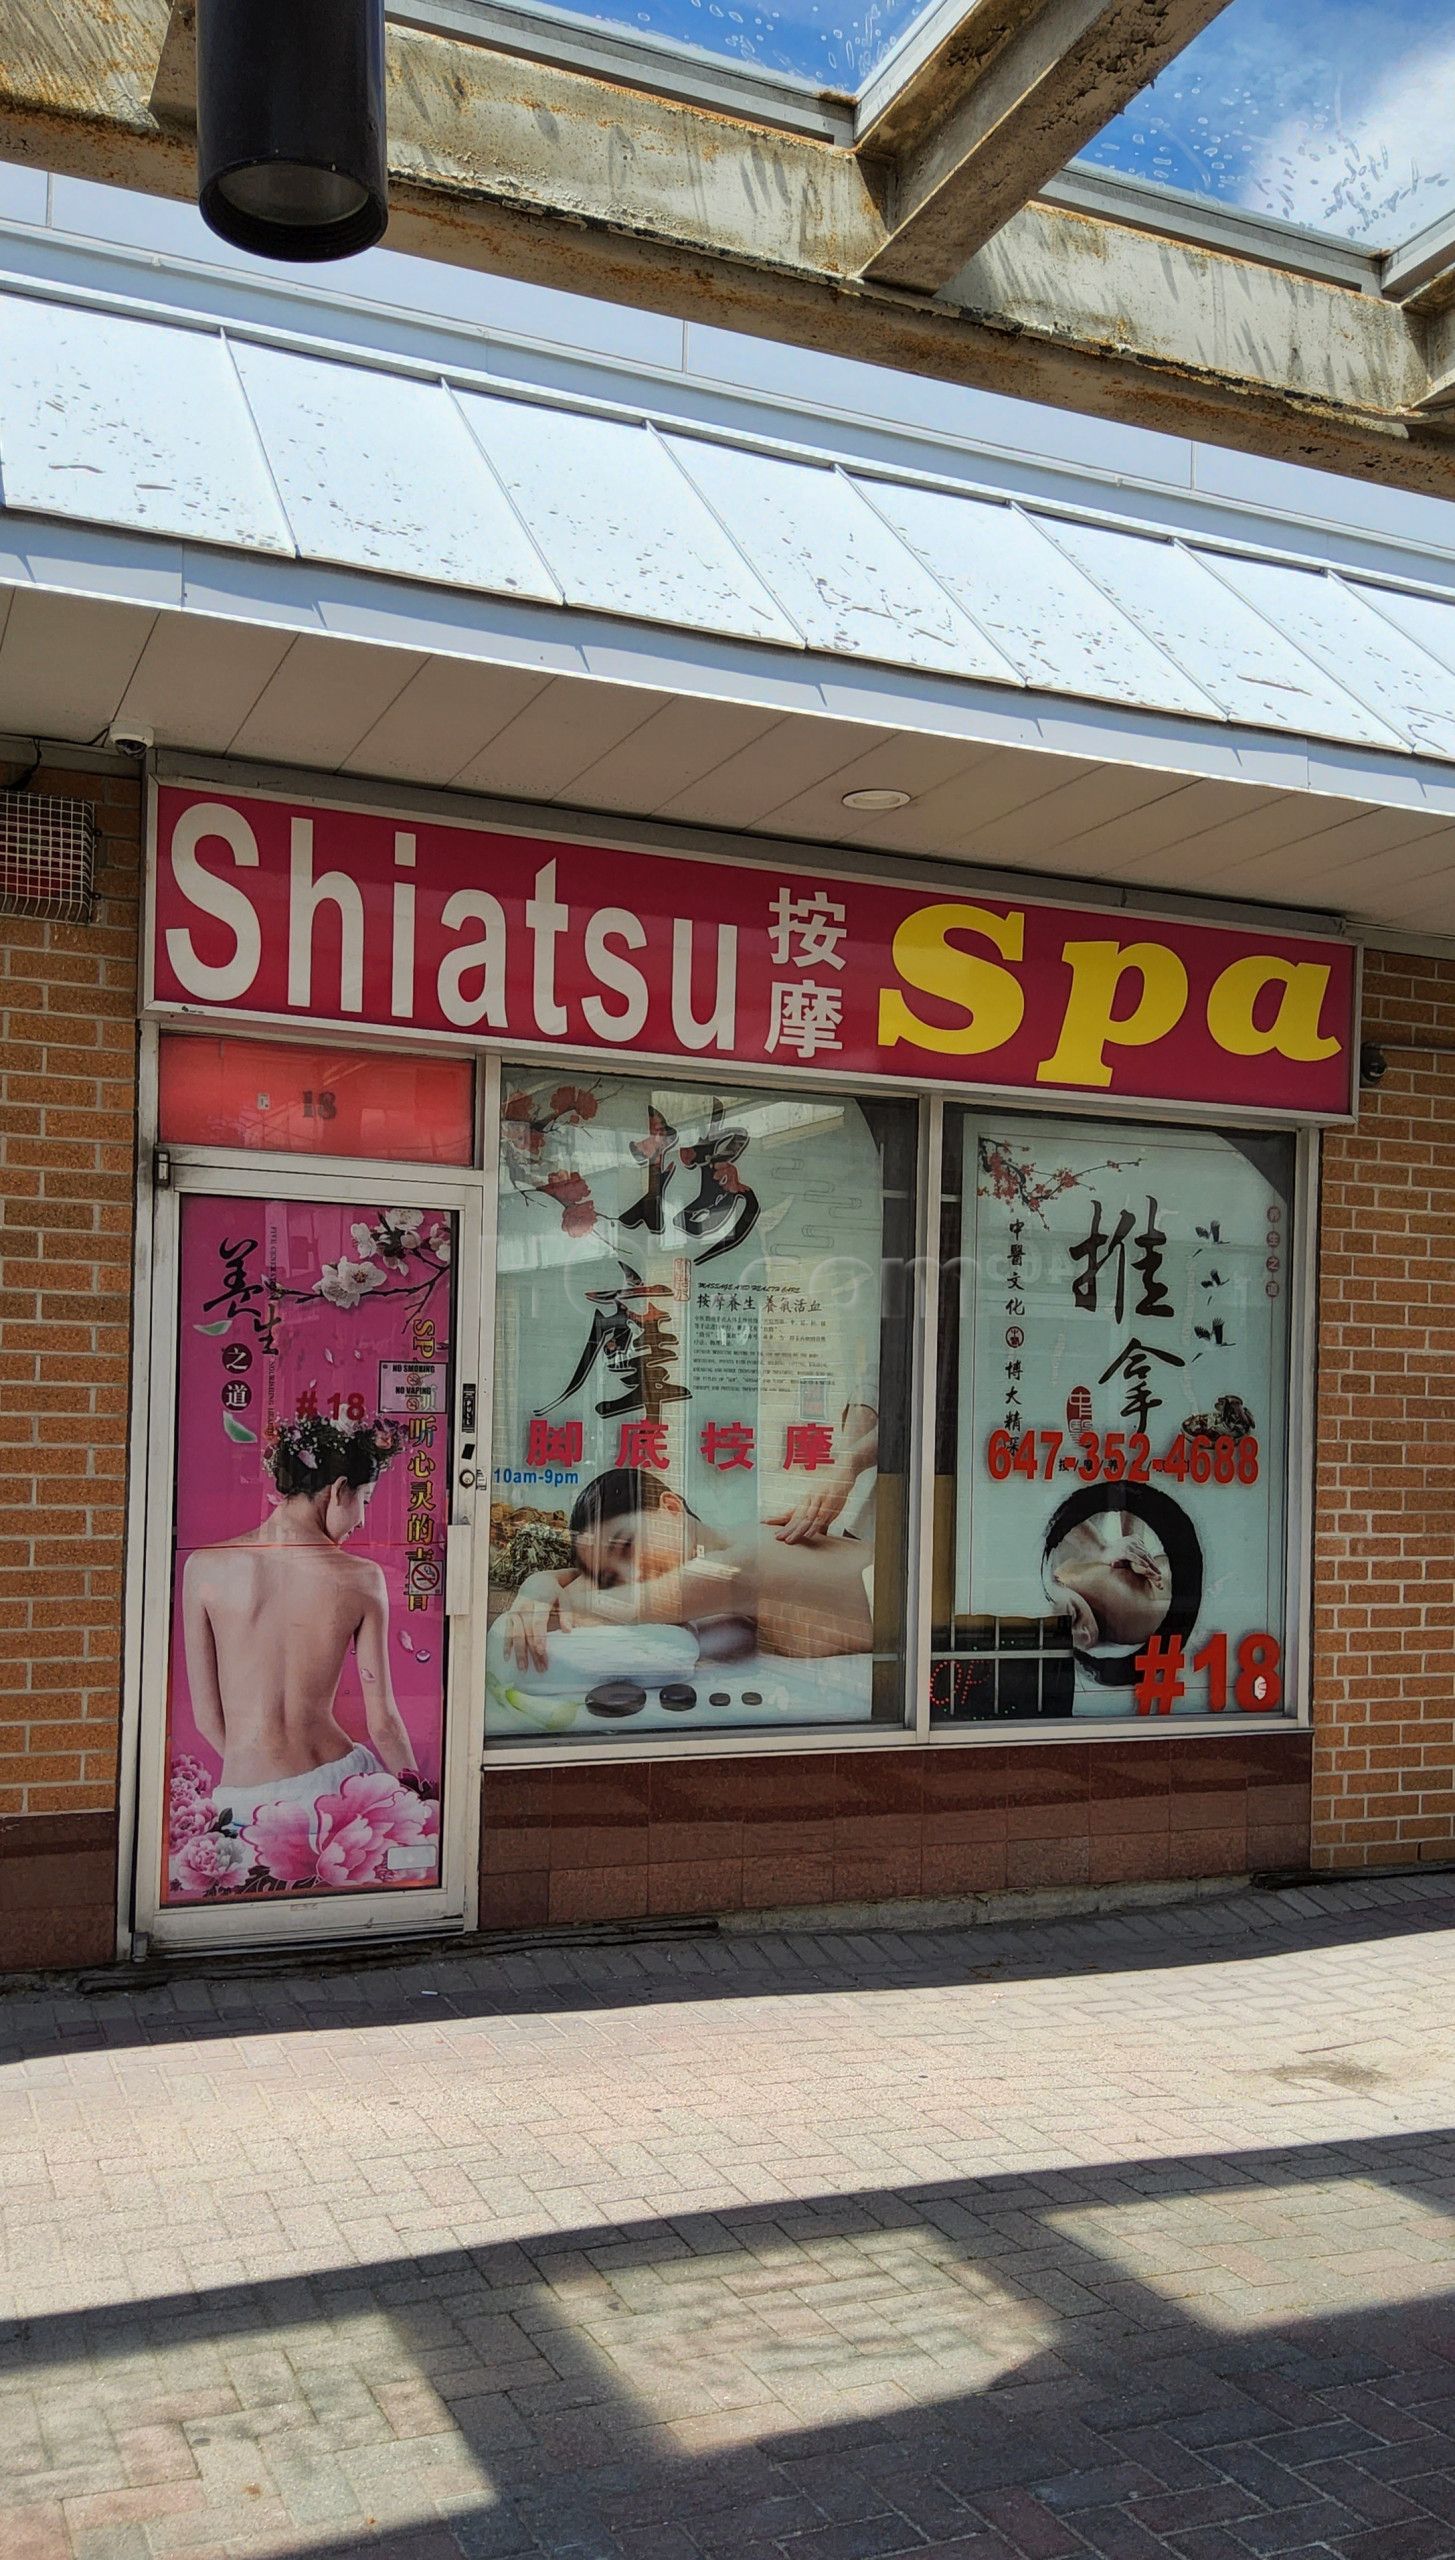 Toronto, Ontario Shiatsu Spa